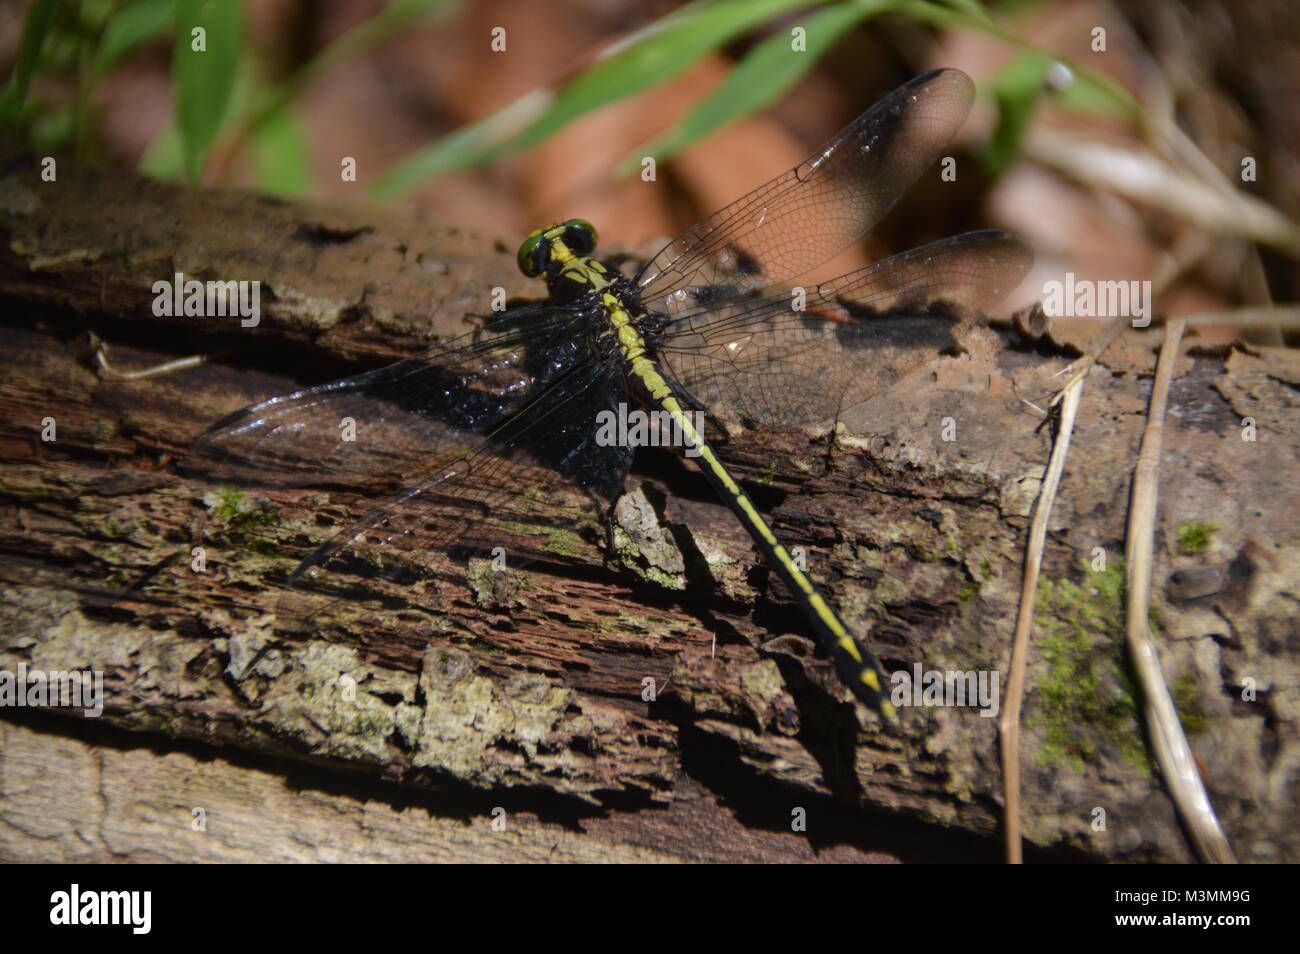 Un verde e nero Dragonfly sul registro con alcuni greenage nello sfondo dell'immagine. Foto Stock